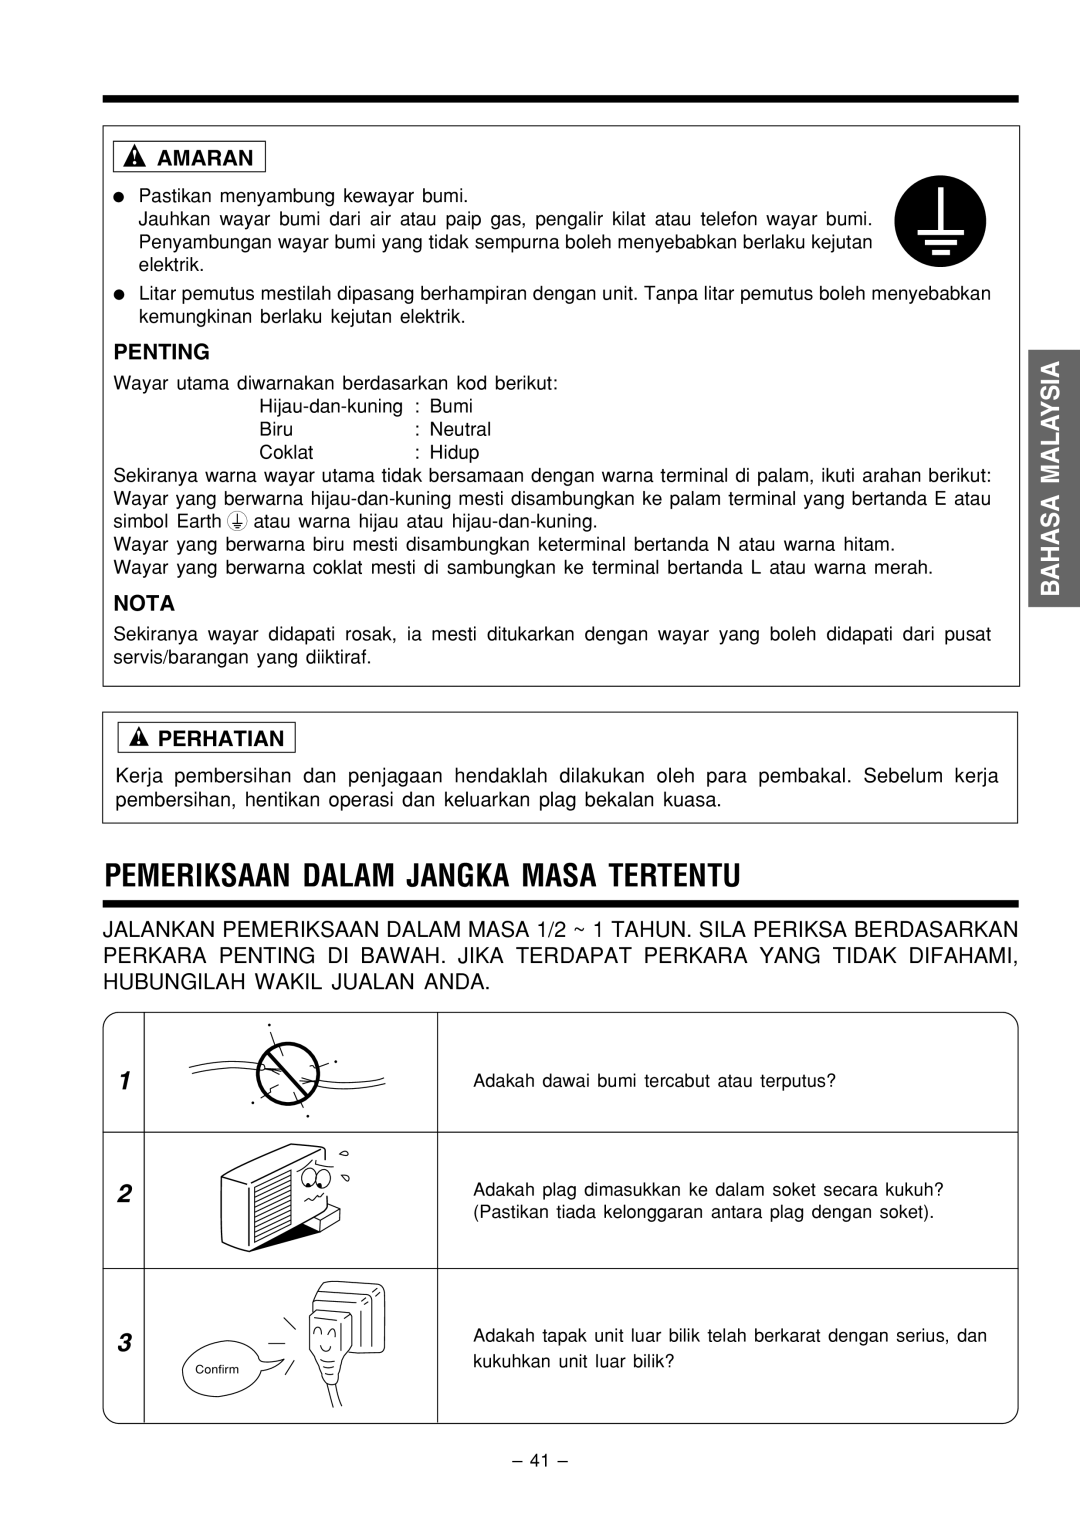 Philips RAC-18C9, RAS-18C9 Pemeriksaan Dalam Jangka Masa Tertentu, Amaran, Penting, Bahasa Malaysia, Nota, Perhatian 